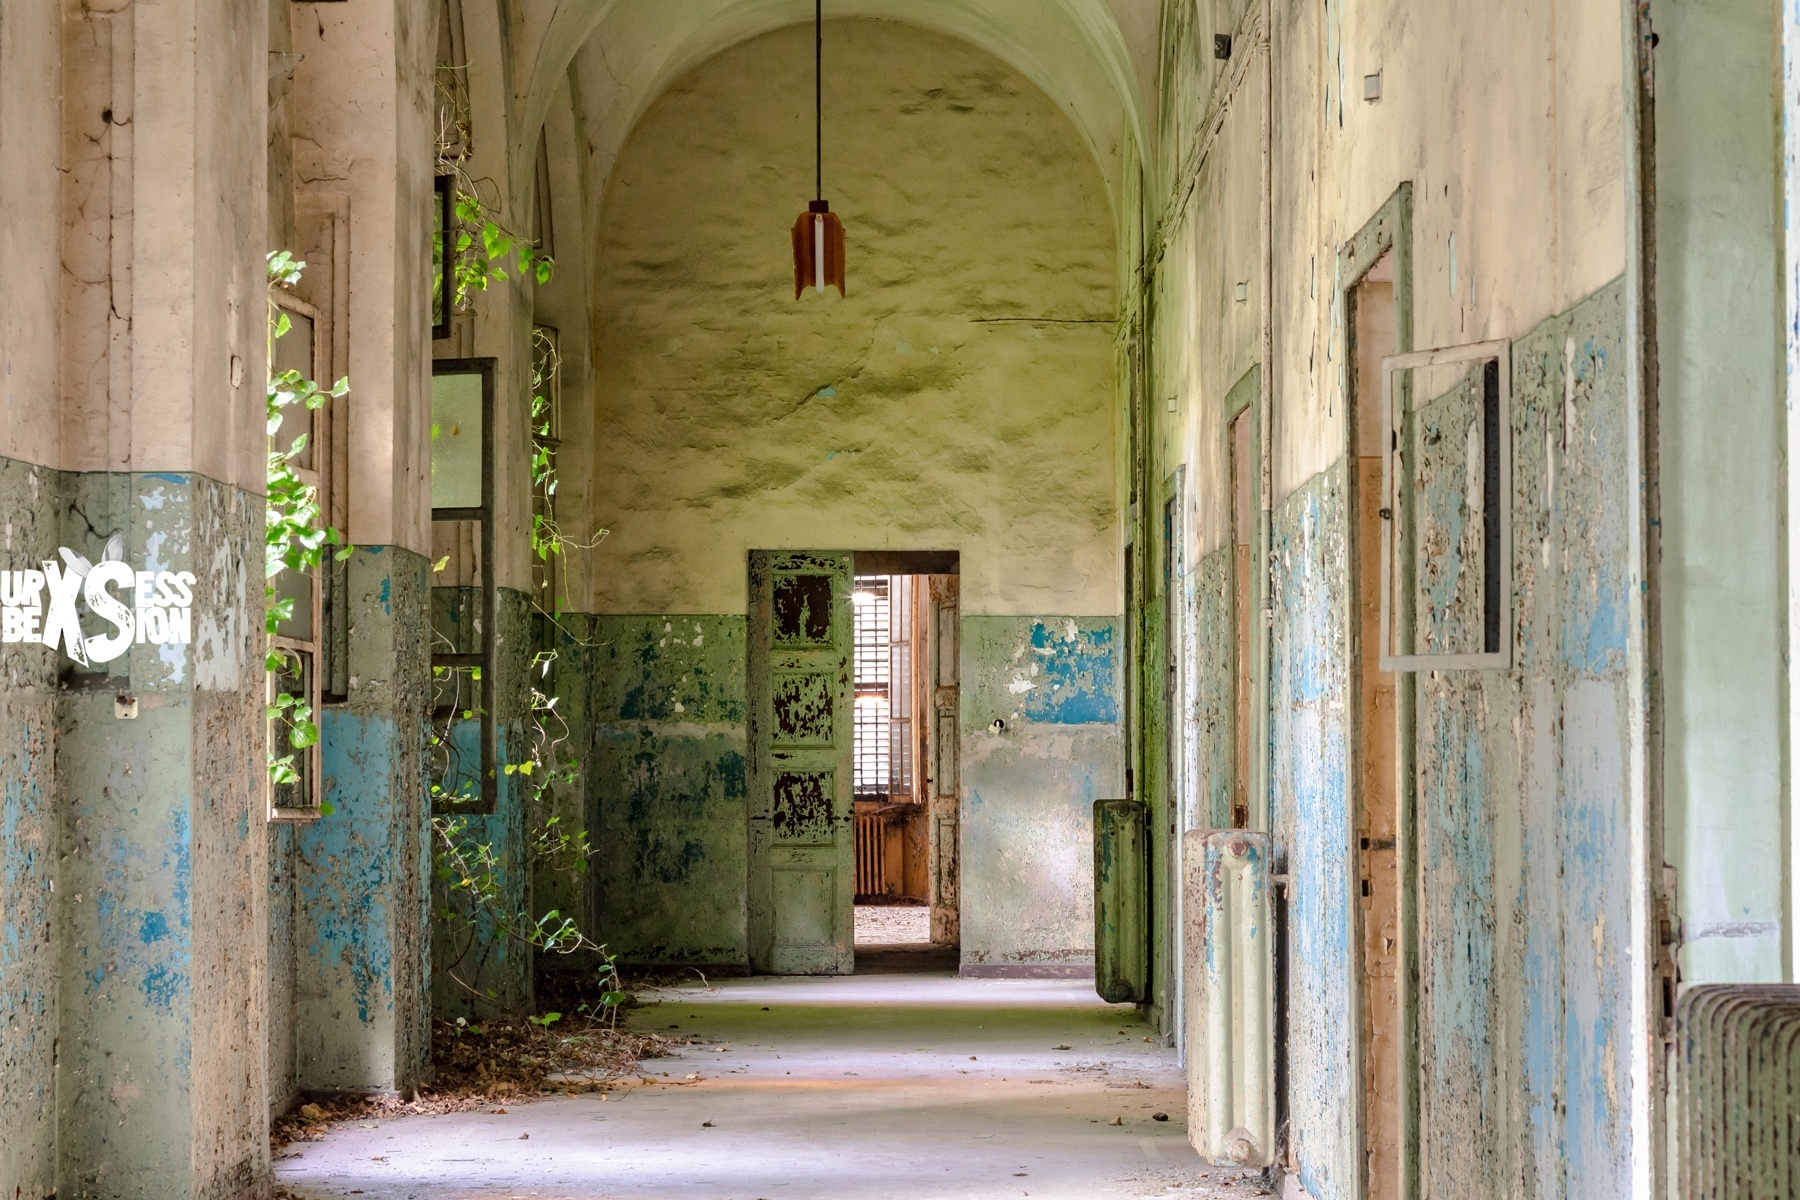 Asile abandonné situé en Italie